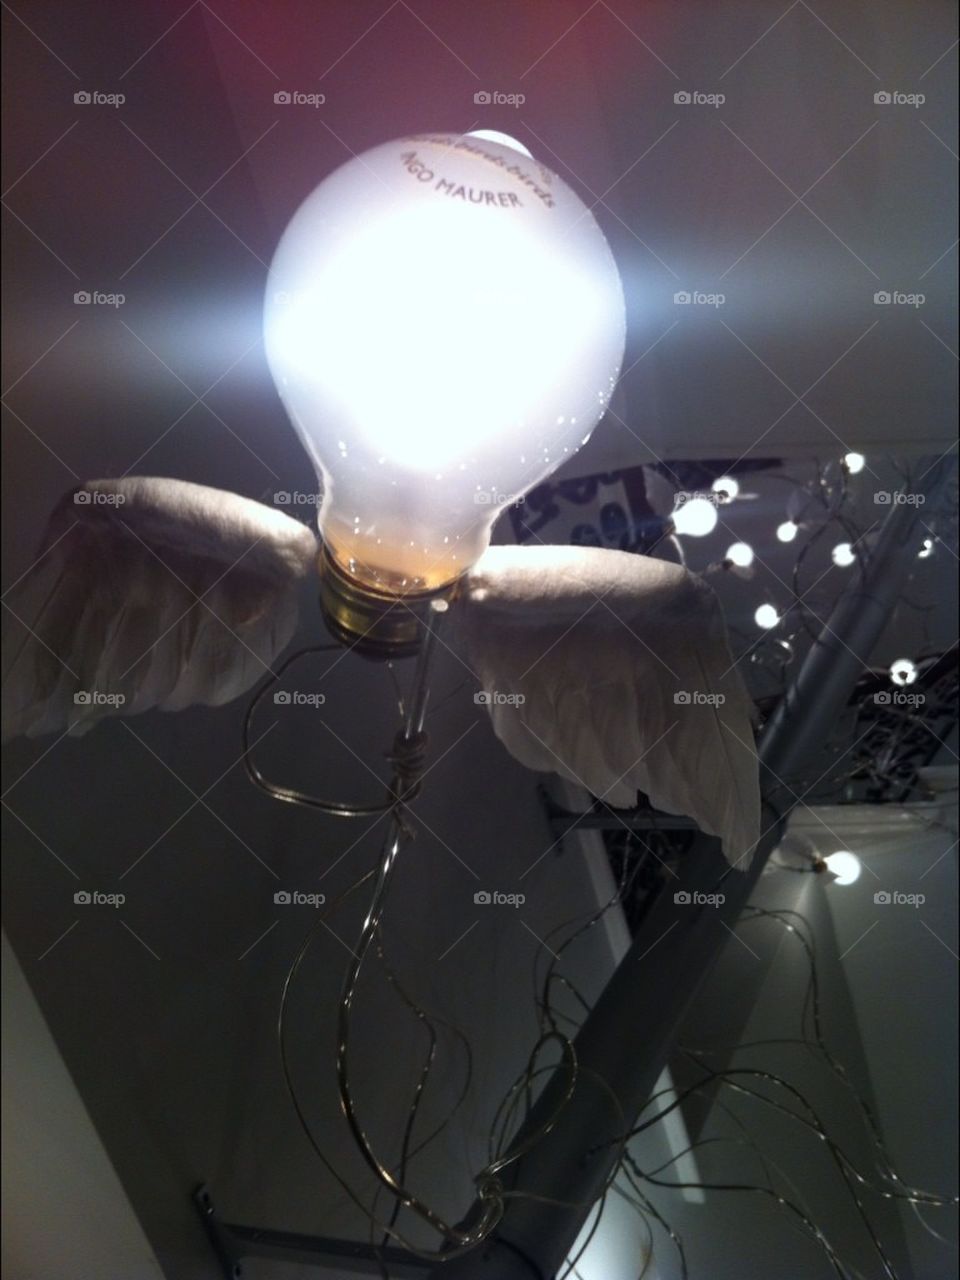 Bulbs might fly